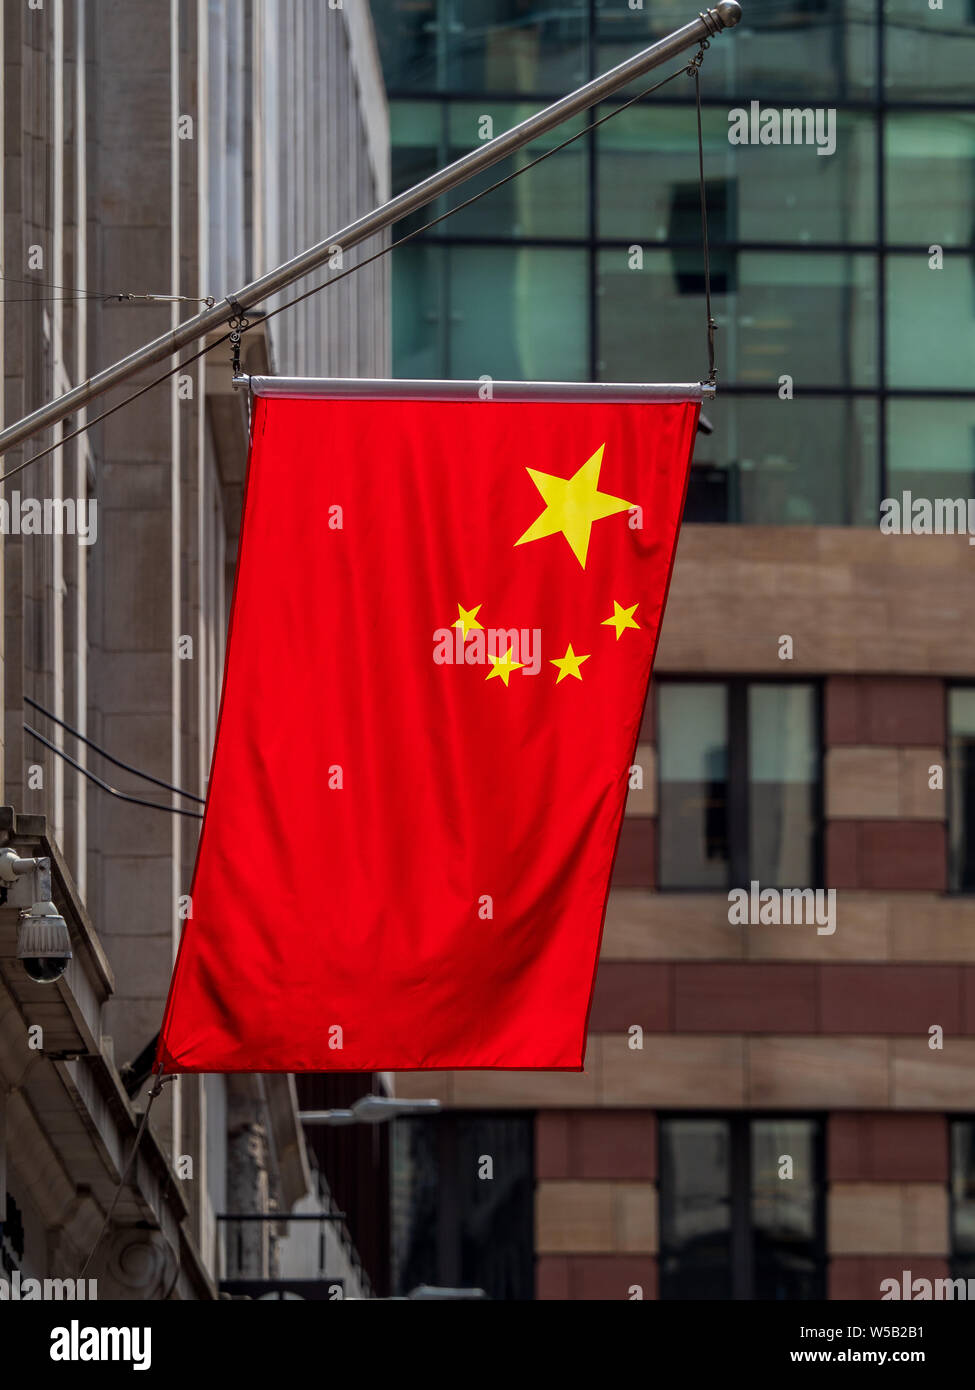 Banderas chinas en la ciudad de Londres - banderas chinas marcan la presencia creciente de los bancos chinos en el distrito financiero de la ciudad de Londres. Foto de stock